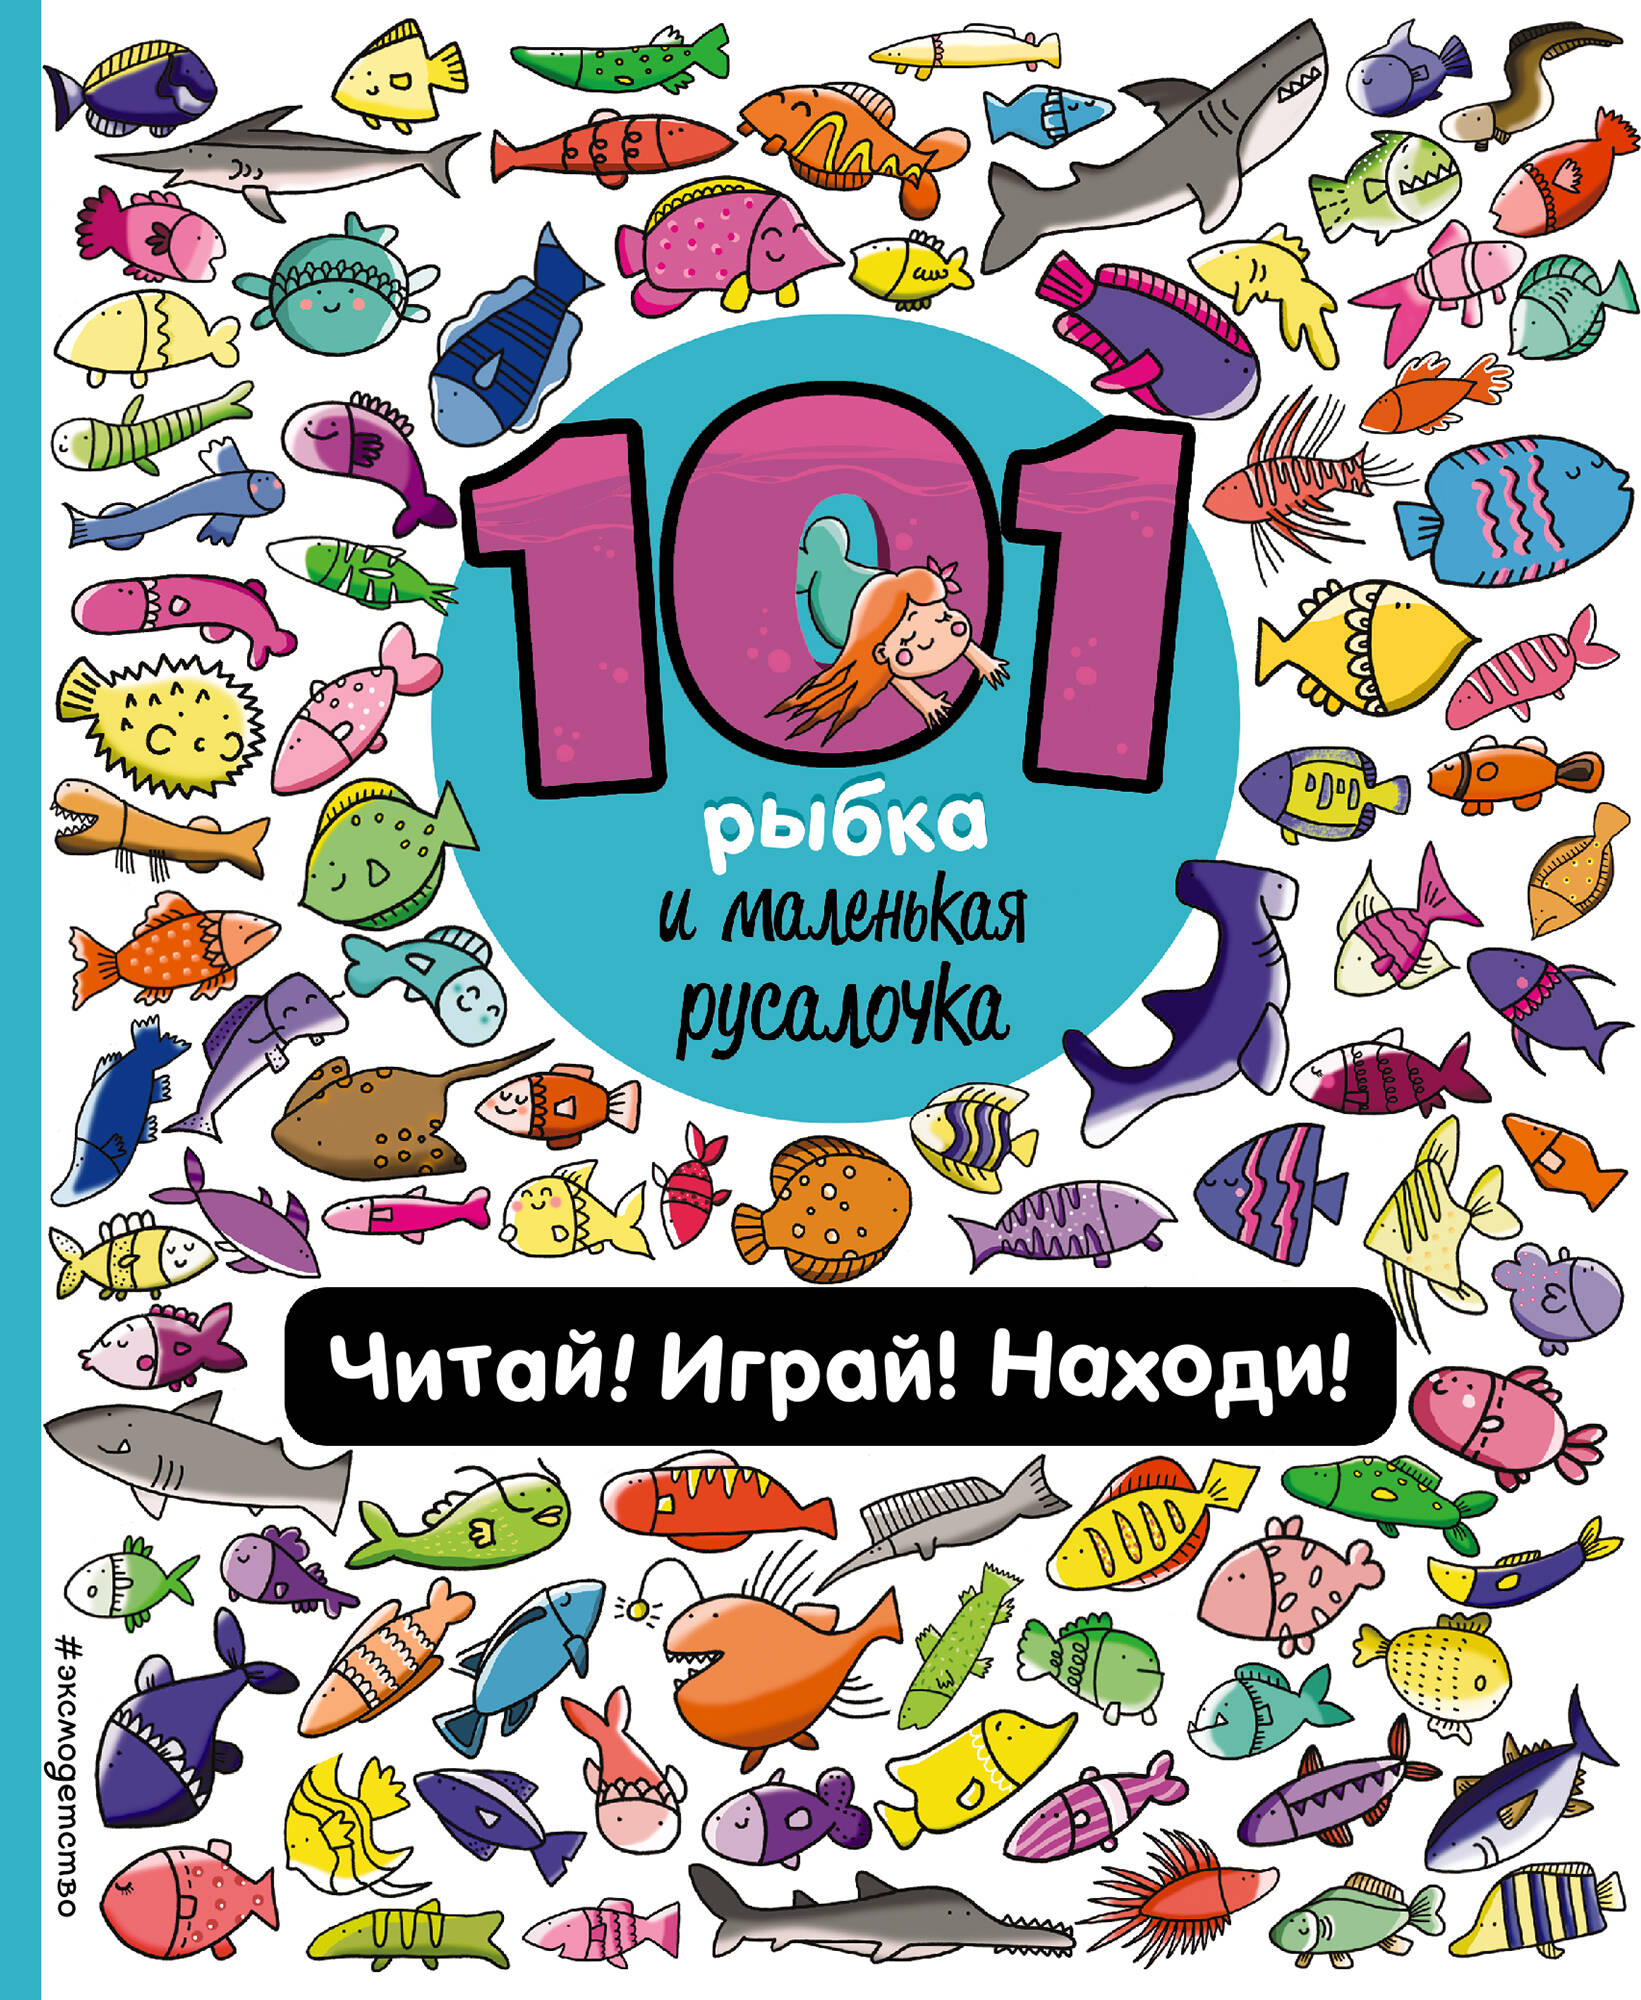 Галуховская Наталия - 101 рыбка и маленькая русалочка. Читай! Играй! Находи!